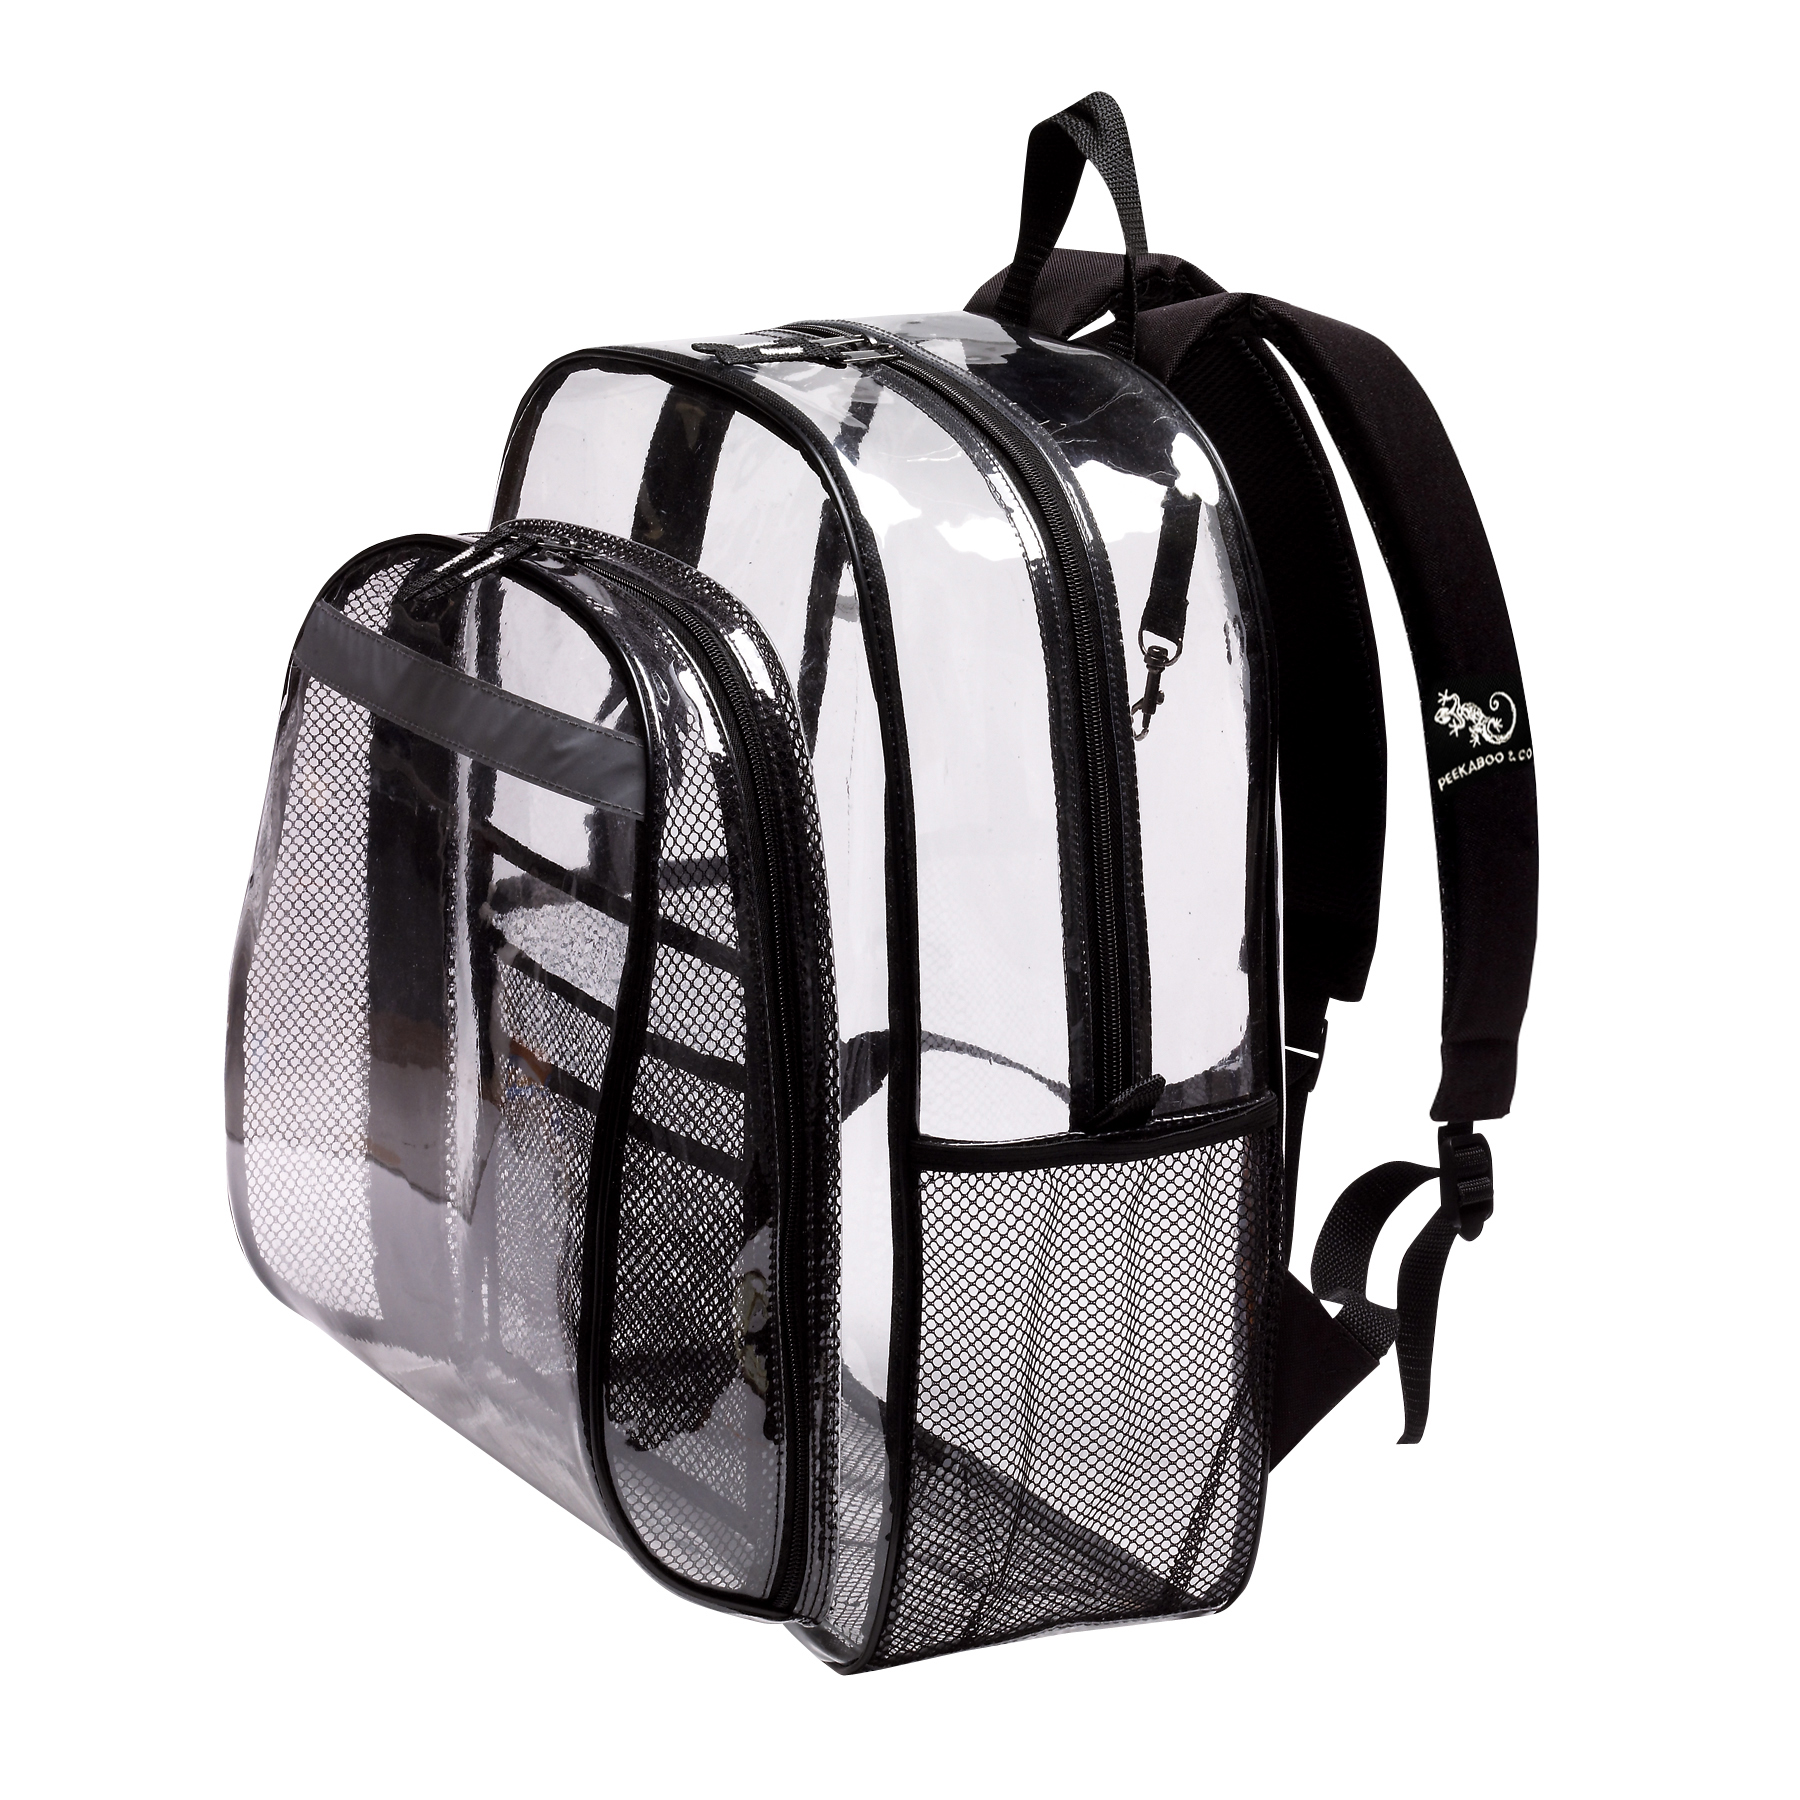 The Clear Backpack | Peekaboo & Co.